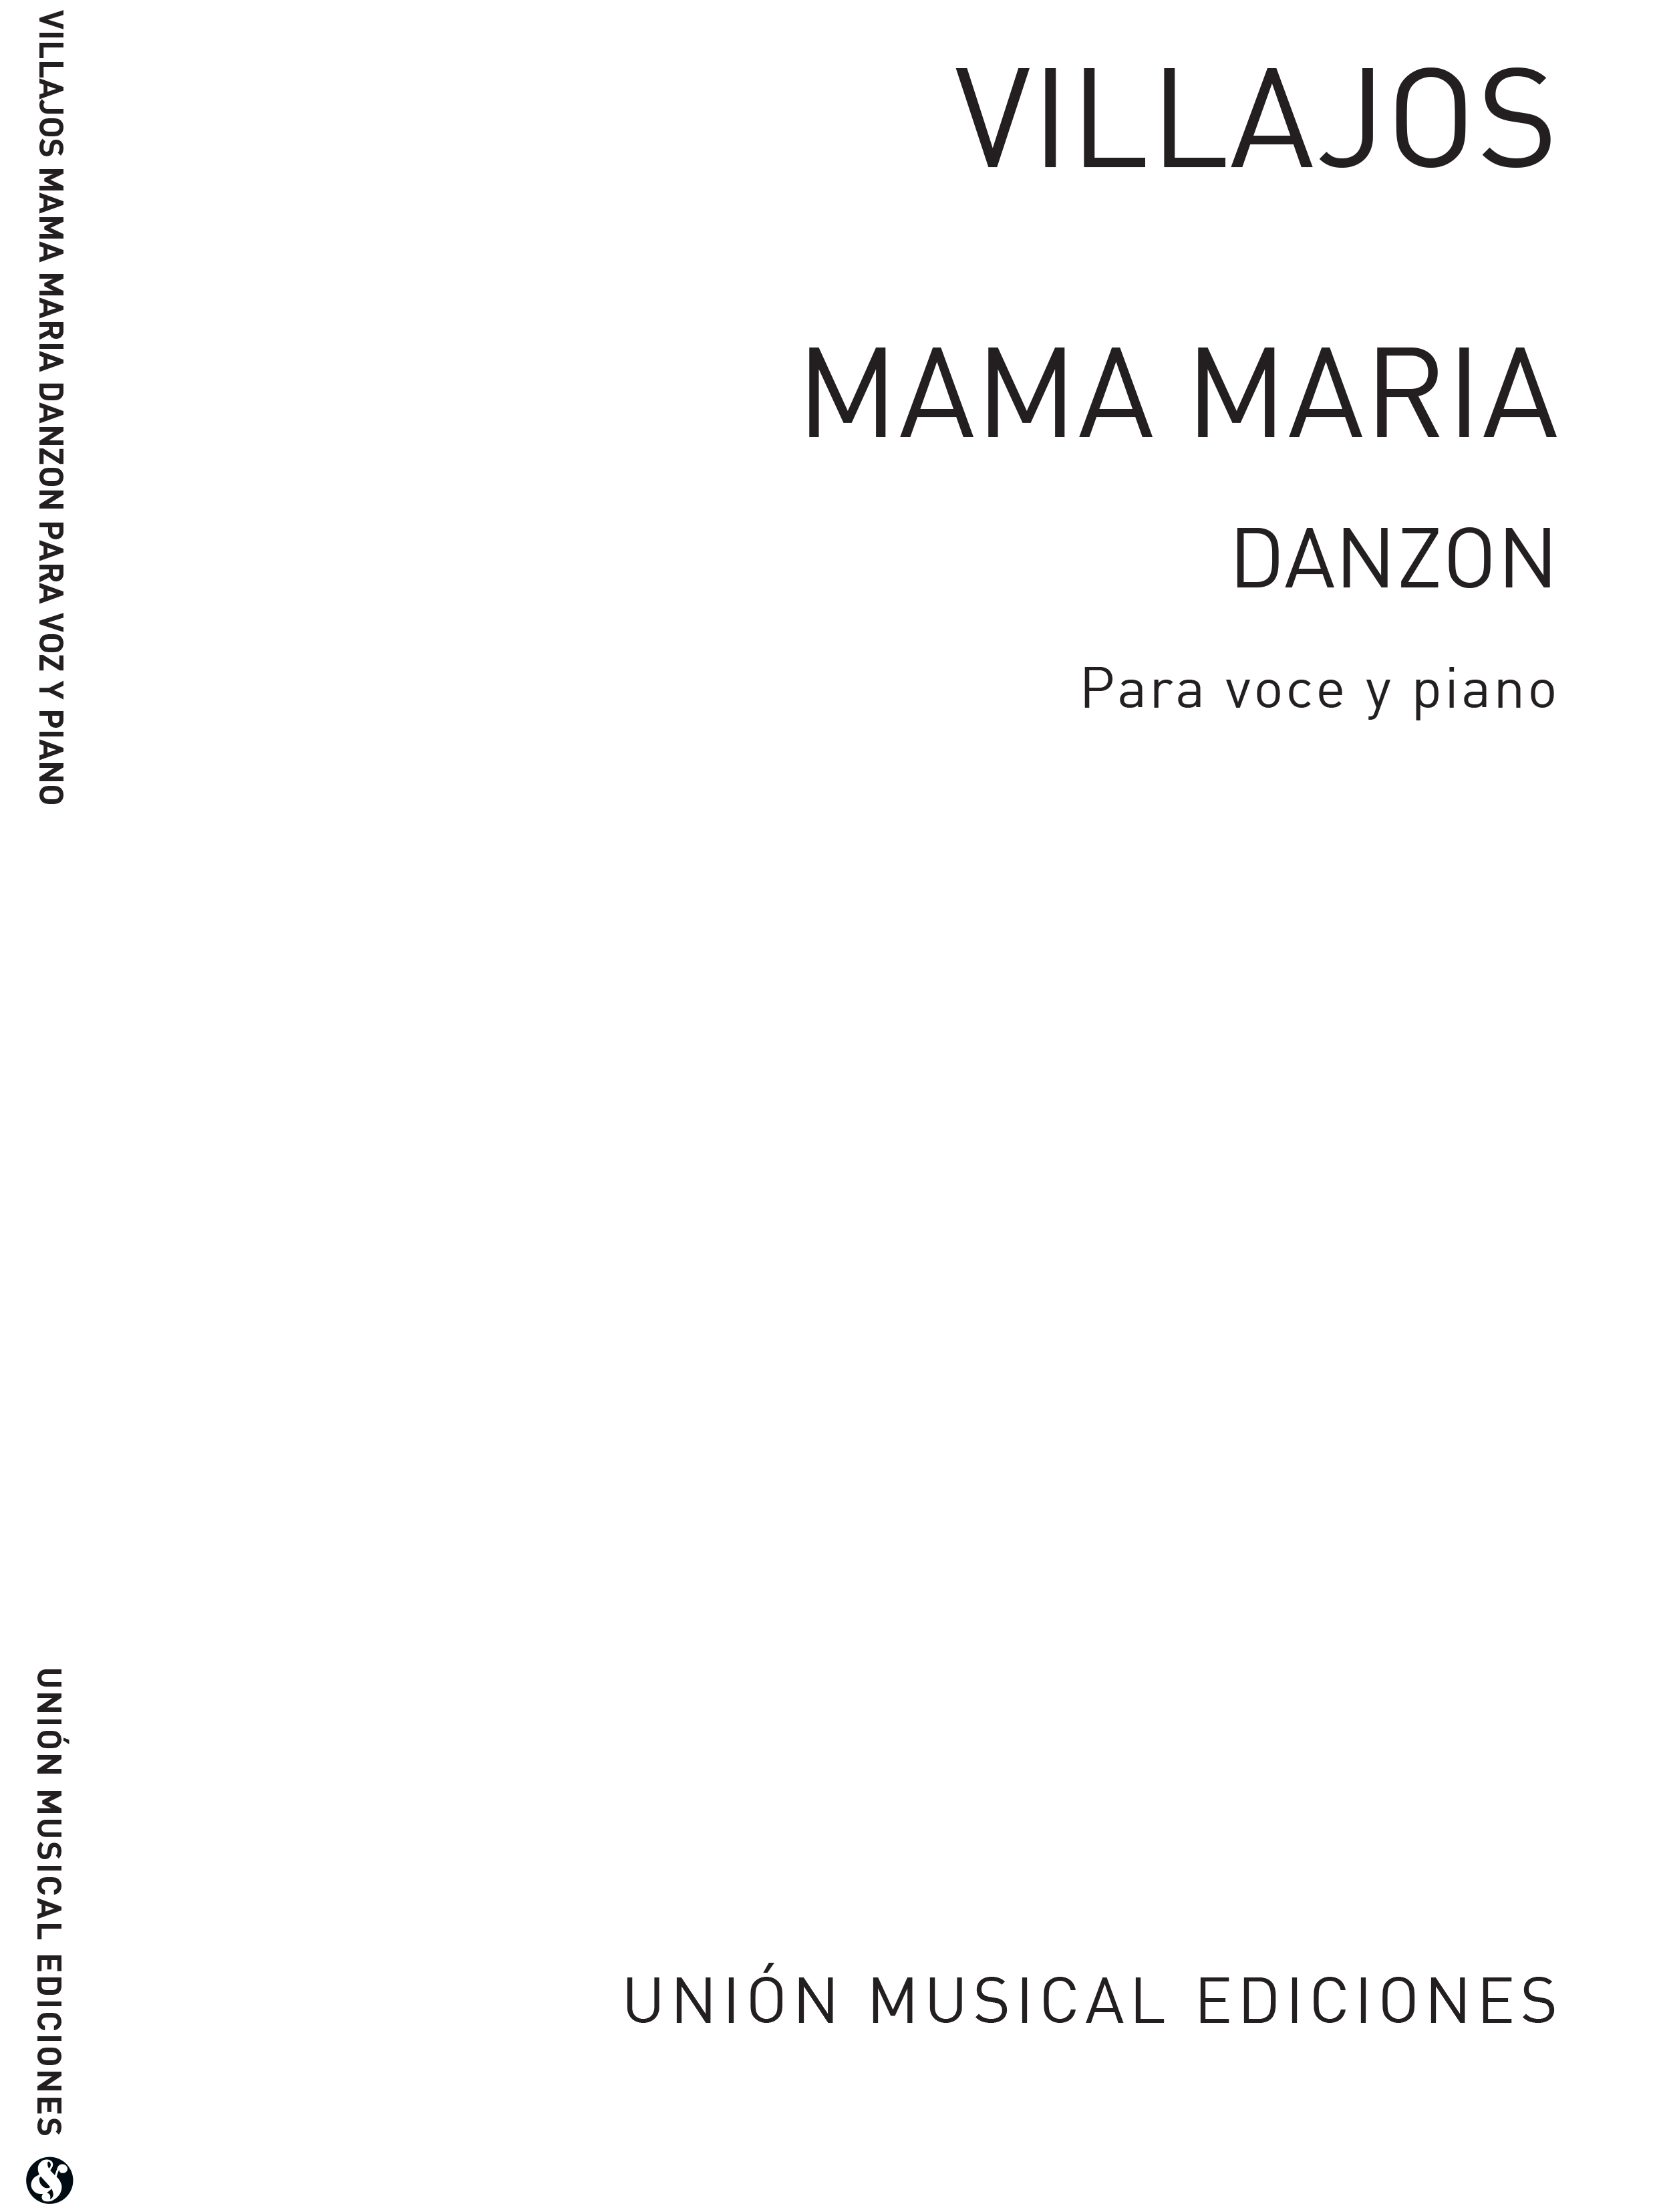 Angel Ortiz De Villajos: Villajos: Mama Maria (Danzon): Voice: Single Sheet